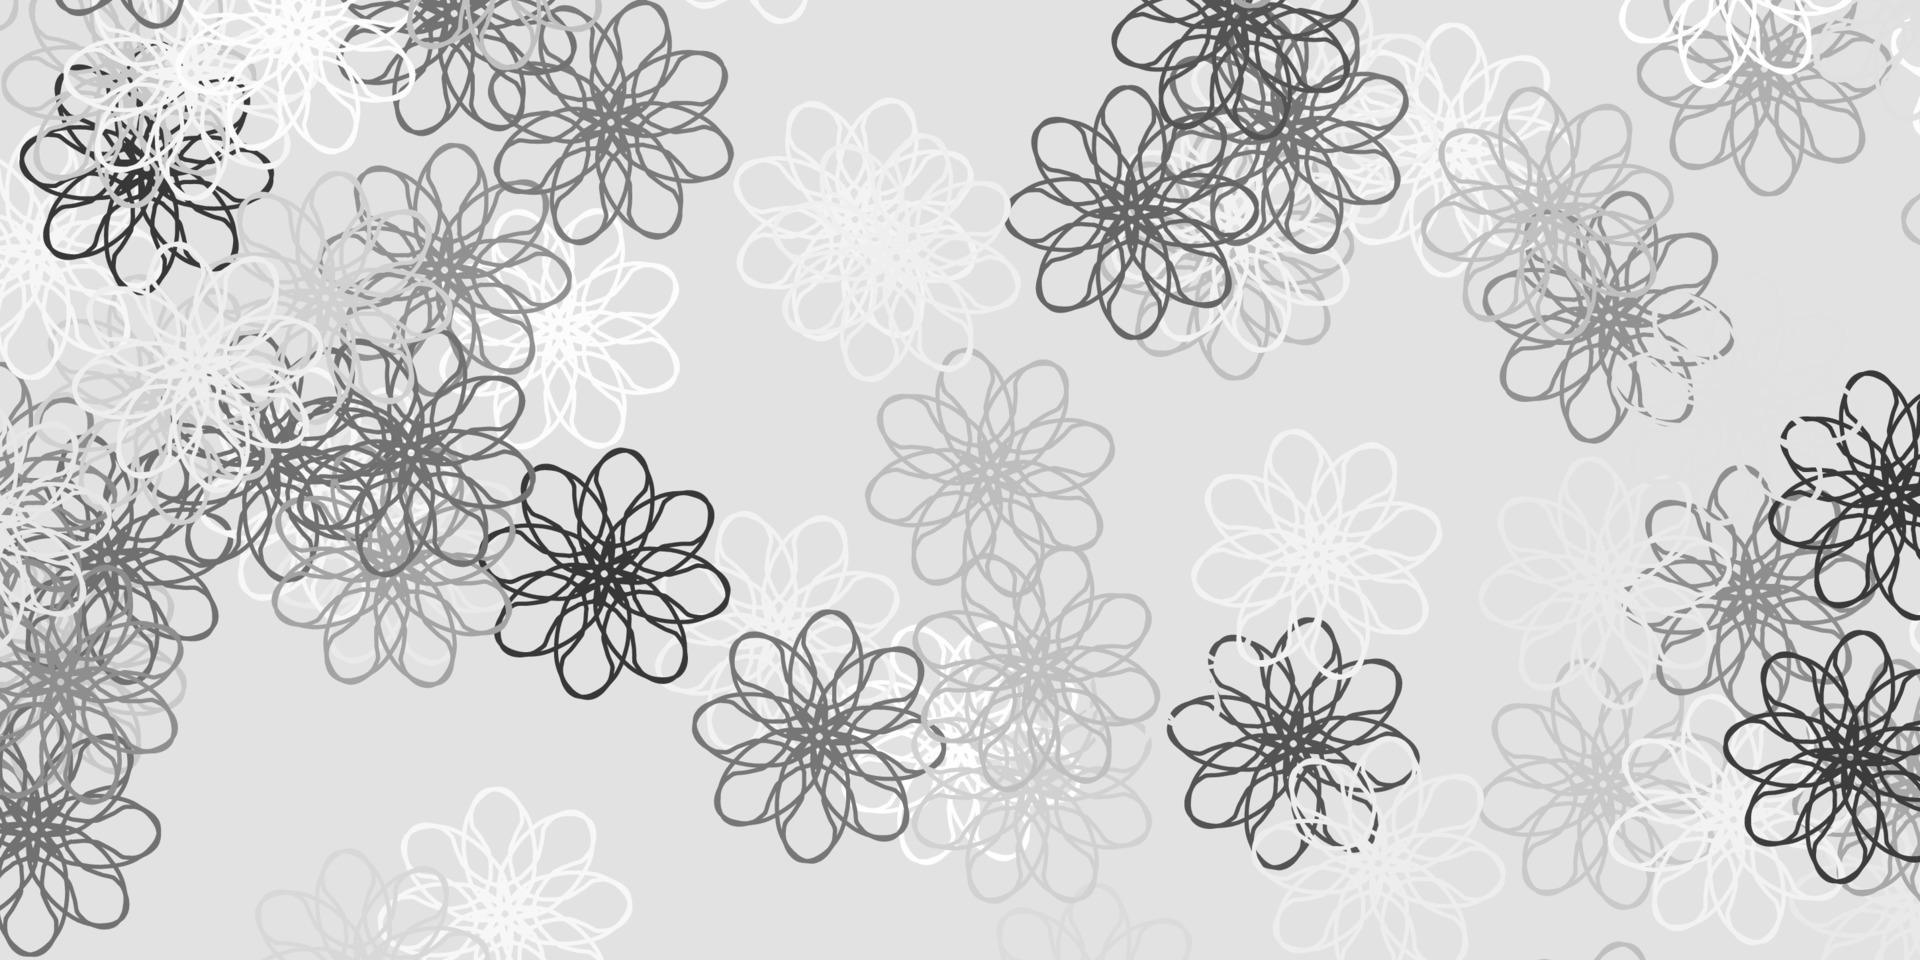 modello di doodle vettoriale grigio chiaro con fiori.